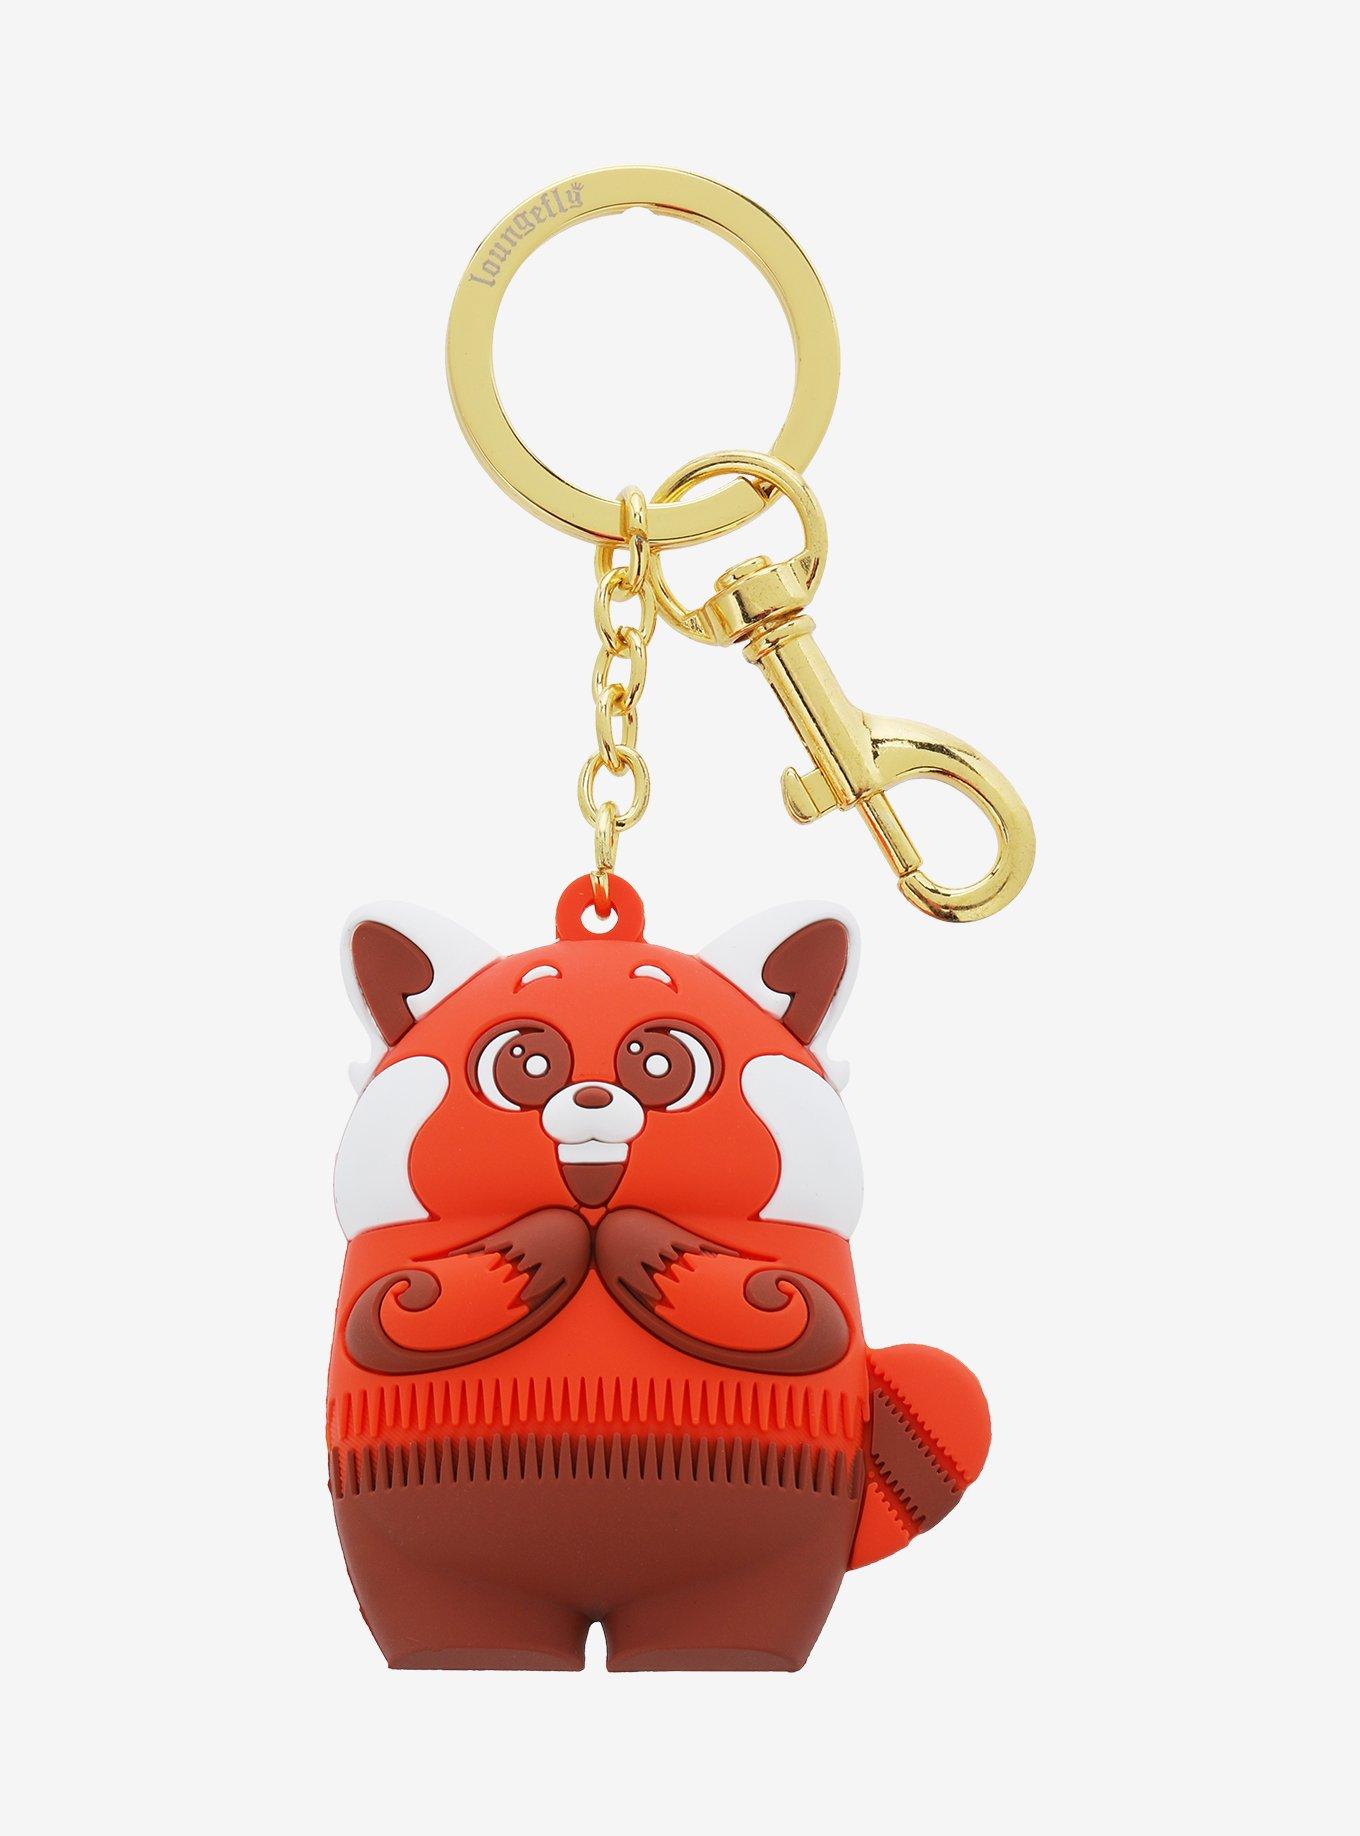 Loungefly Pixar Turning Red Panda Cosplay Wallet